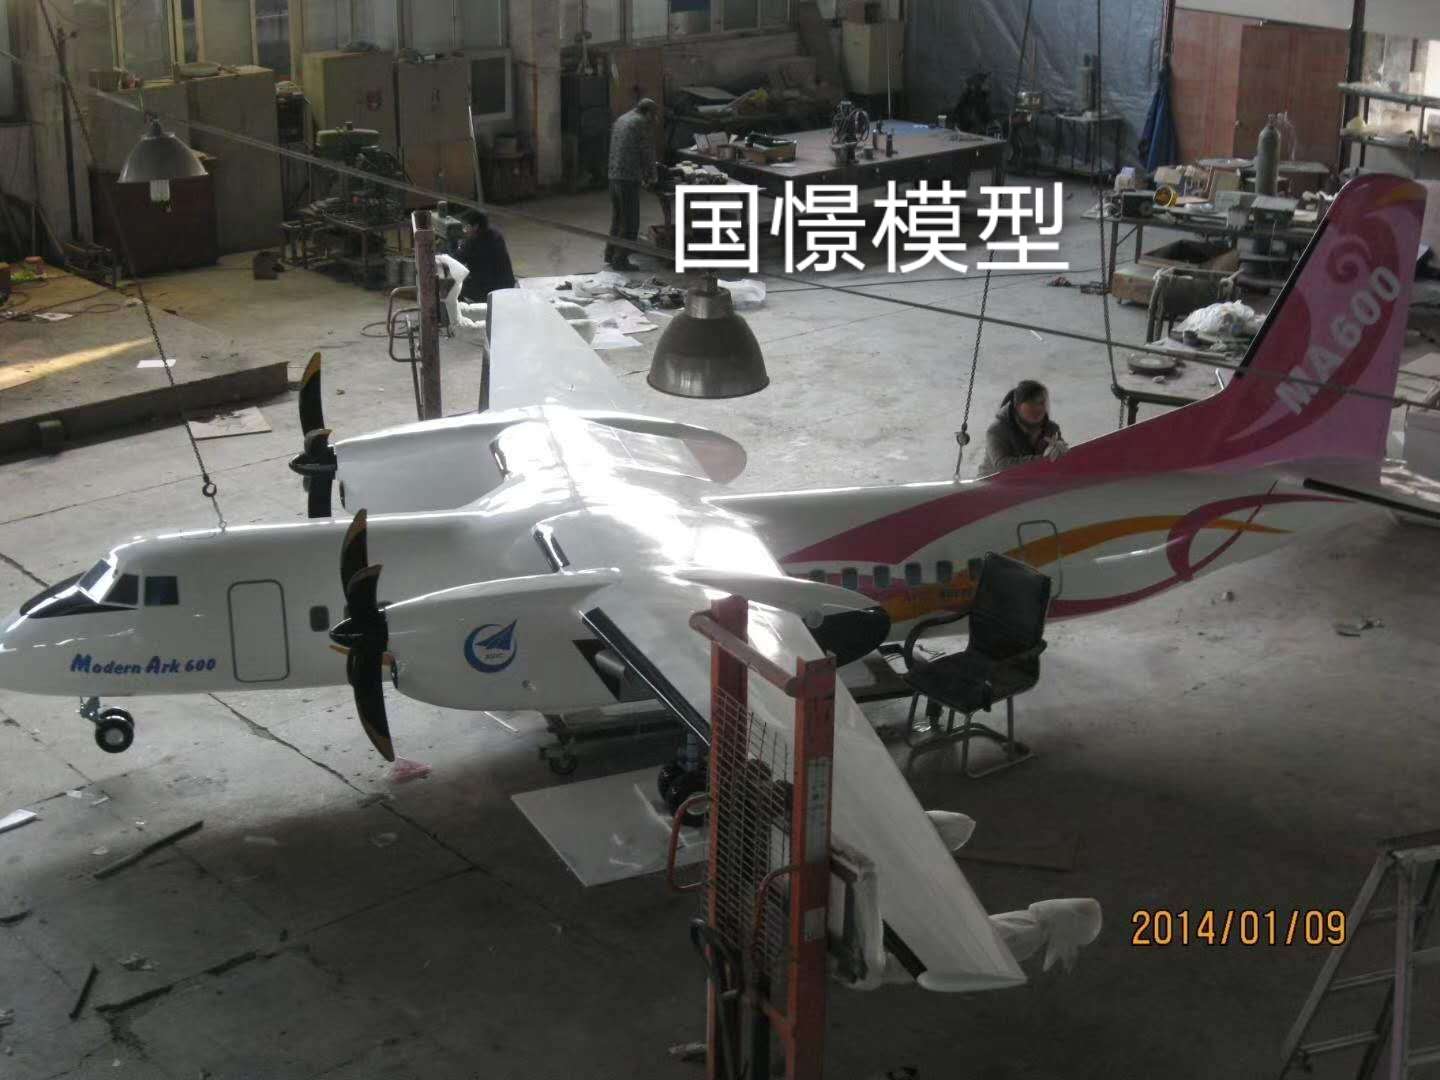 奇台县飞机模型